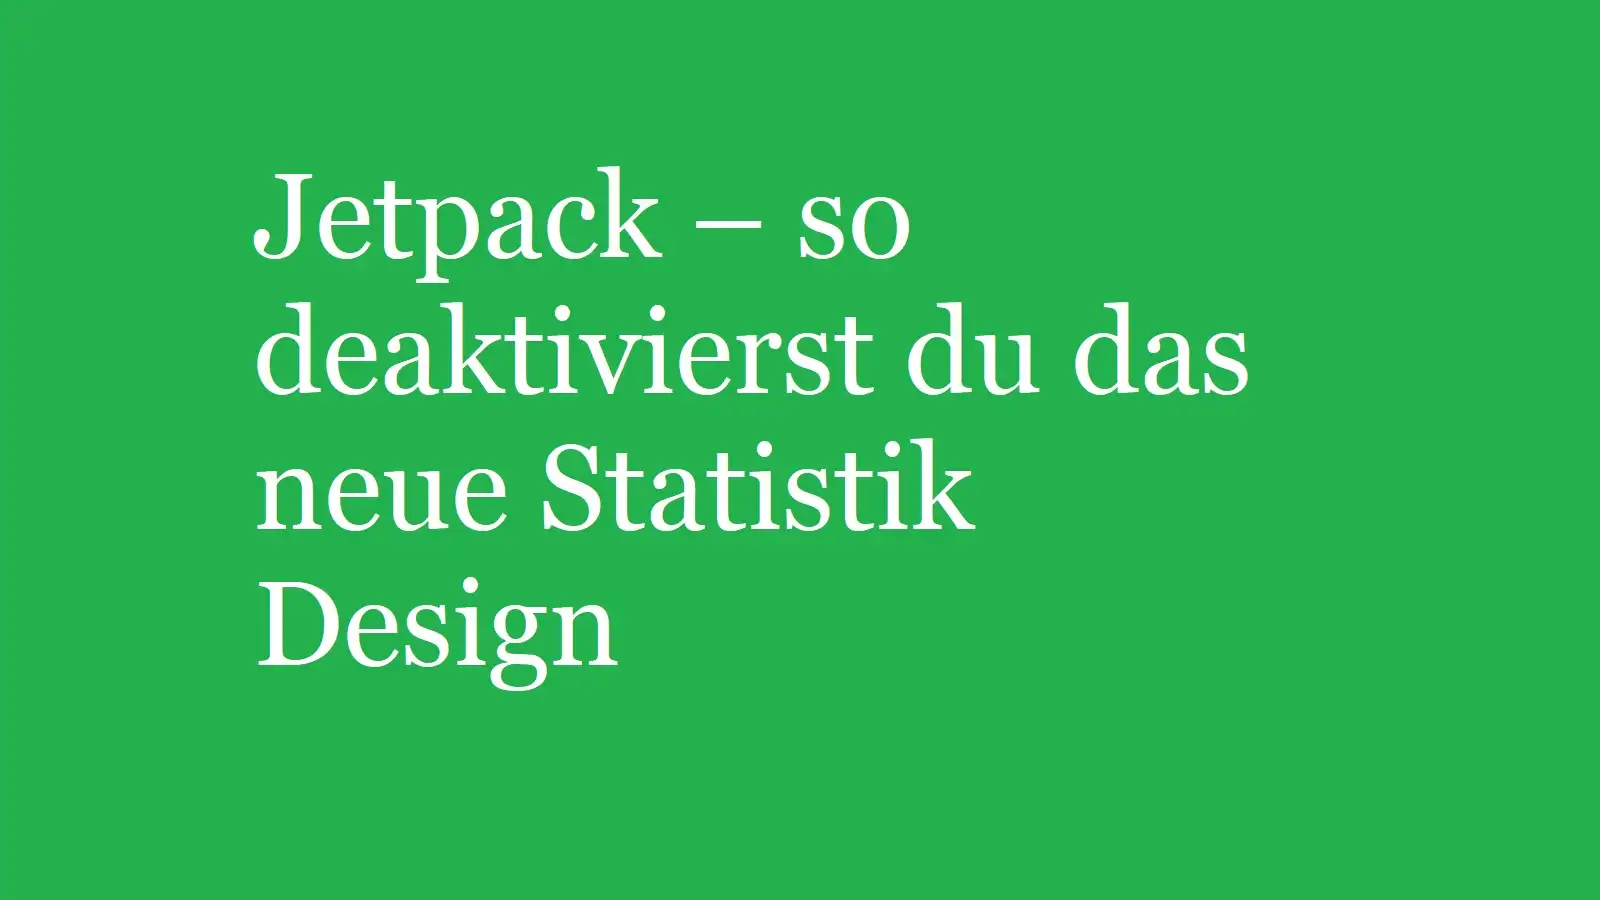 Jetpack – so deaktivierst du das neue Statistik Design